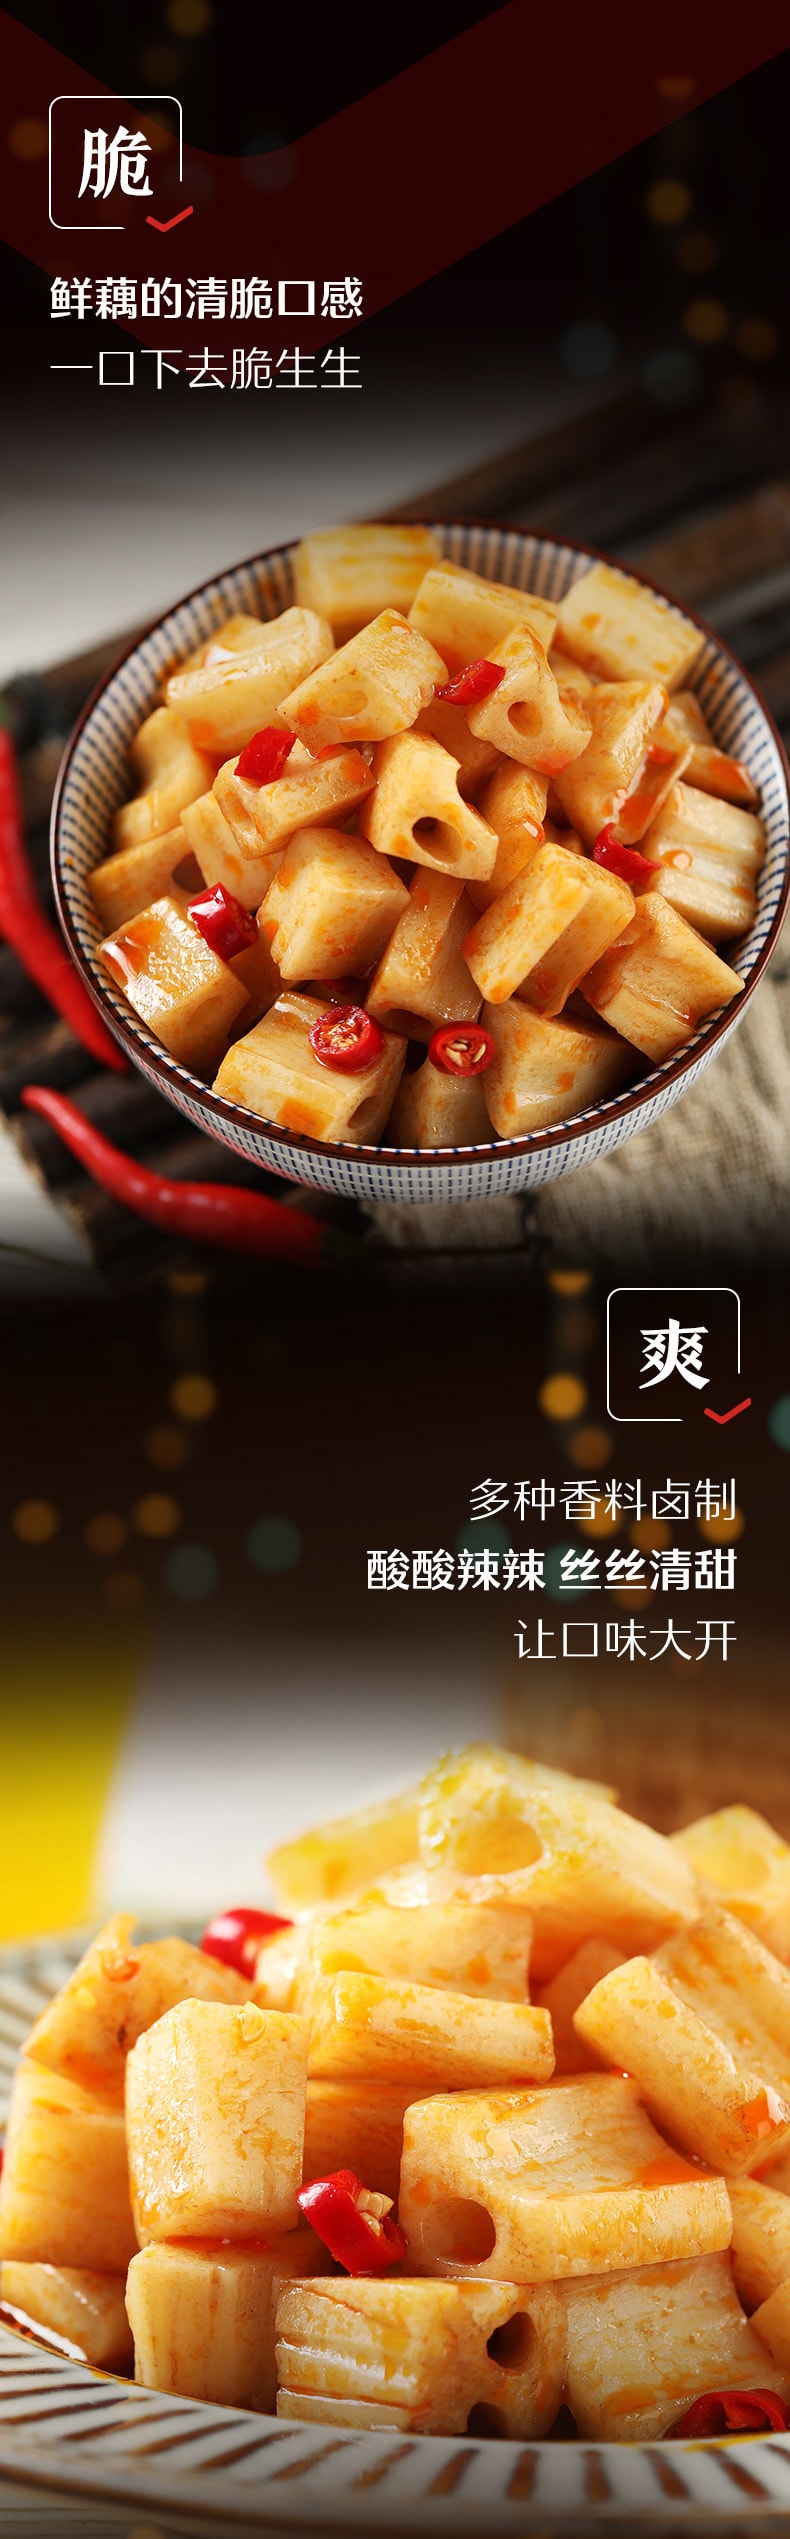 中国直邮]良品铺子 BESTORE  (新老包装随机) 卤藕  烧烤味 168g 1袋